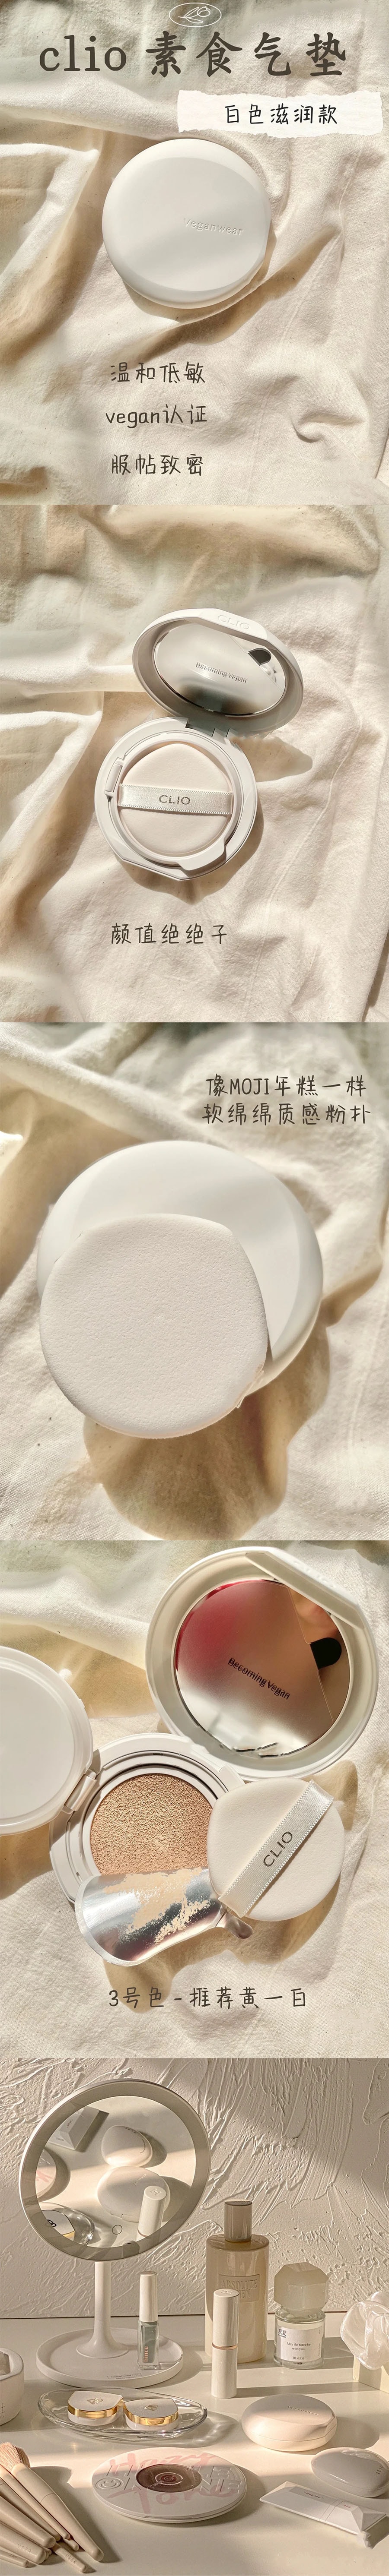 韓國 CLIO 珂萊歐 新款Veganwear素食主義水光氣墊 #04 自然膚色 含替換芯 15g*2.